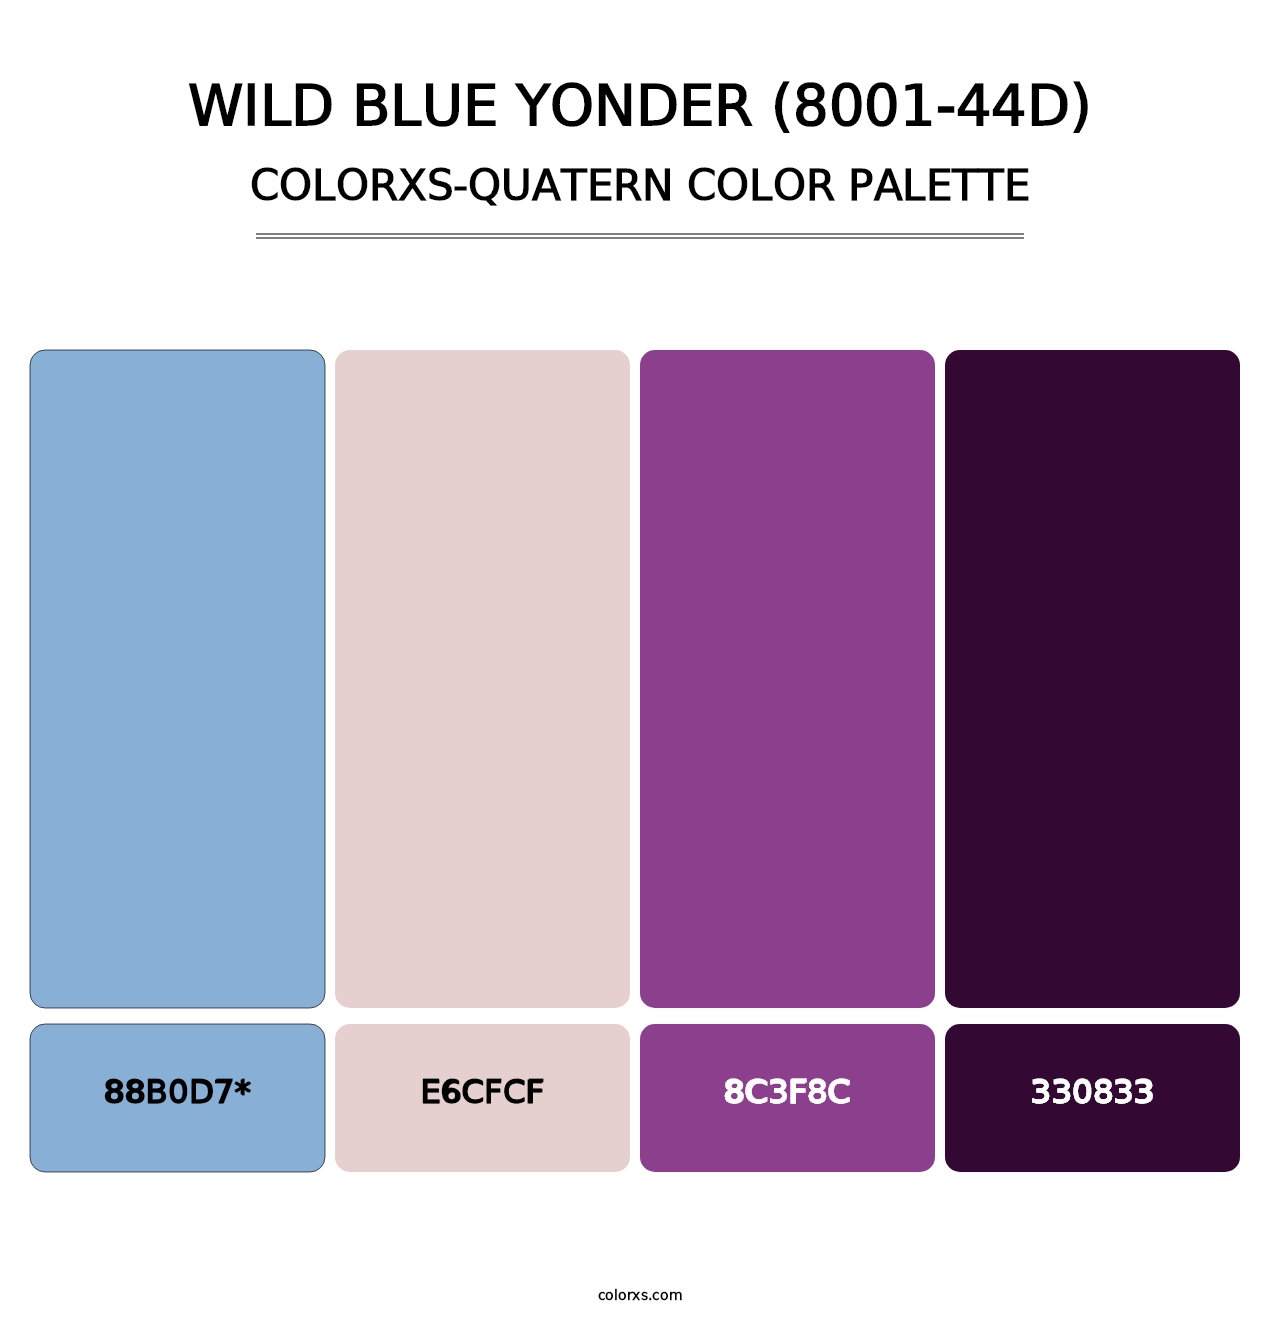 Wild Blue Yonder (8001-44D) - Colorxs Quatern Palette